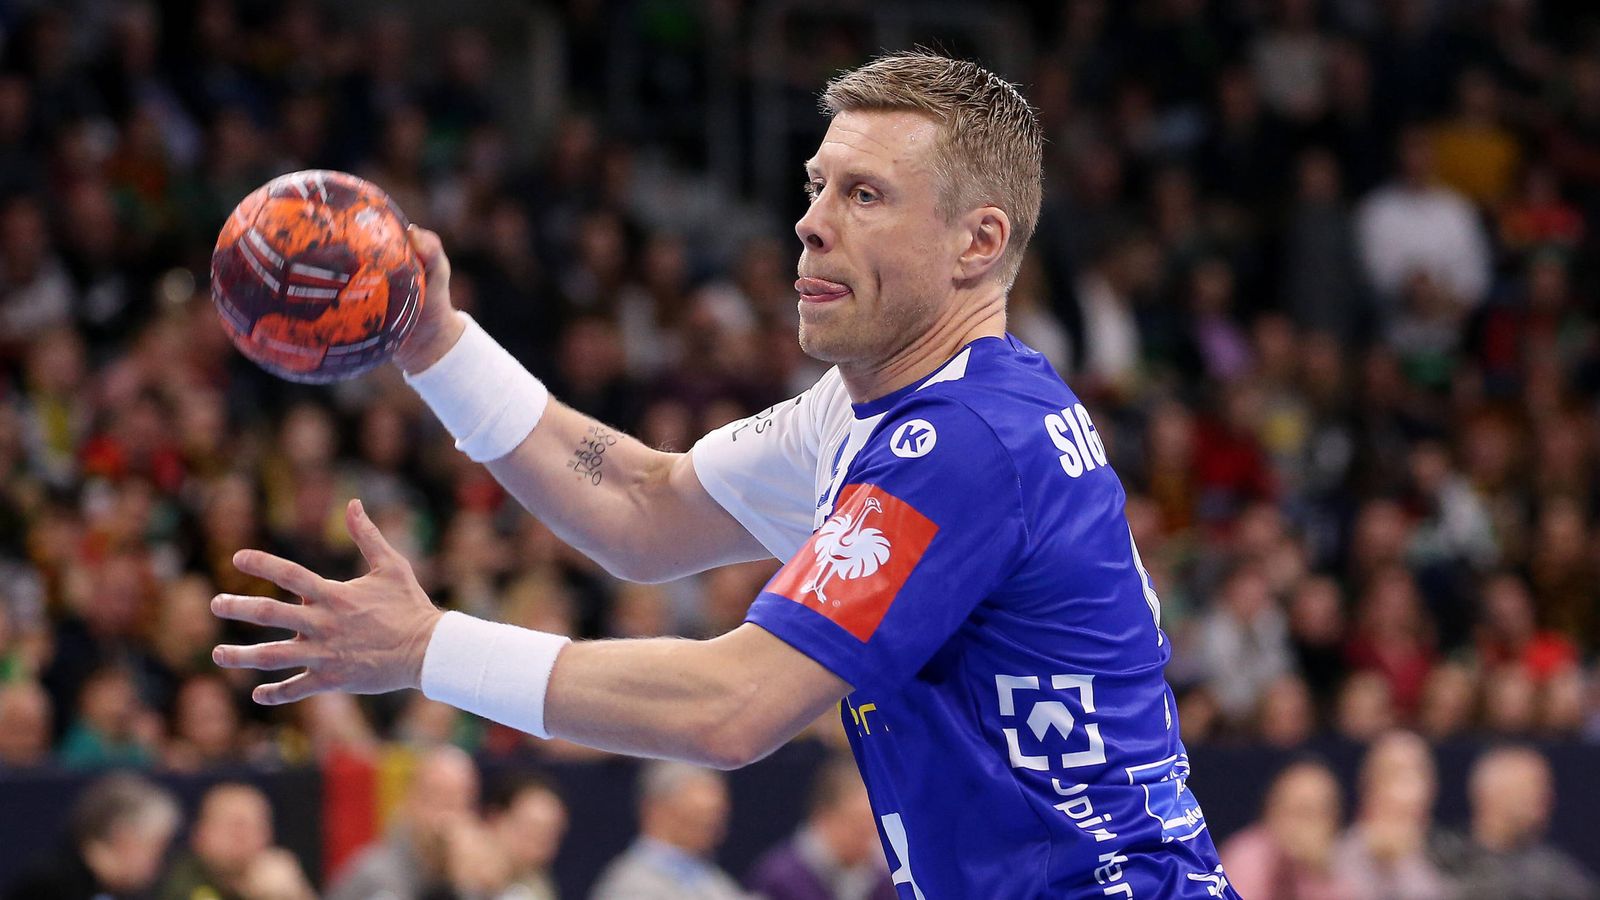 Handball-Star Gudjon Valur Sigurdsson wird neuer Coach in Gummersbach Handball News Sky Sport